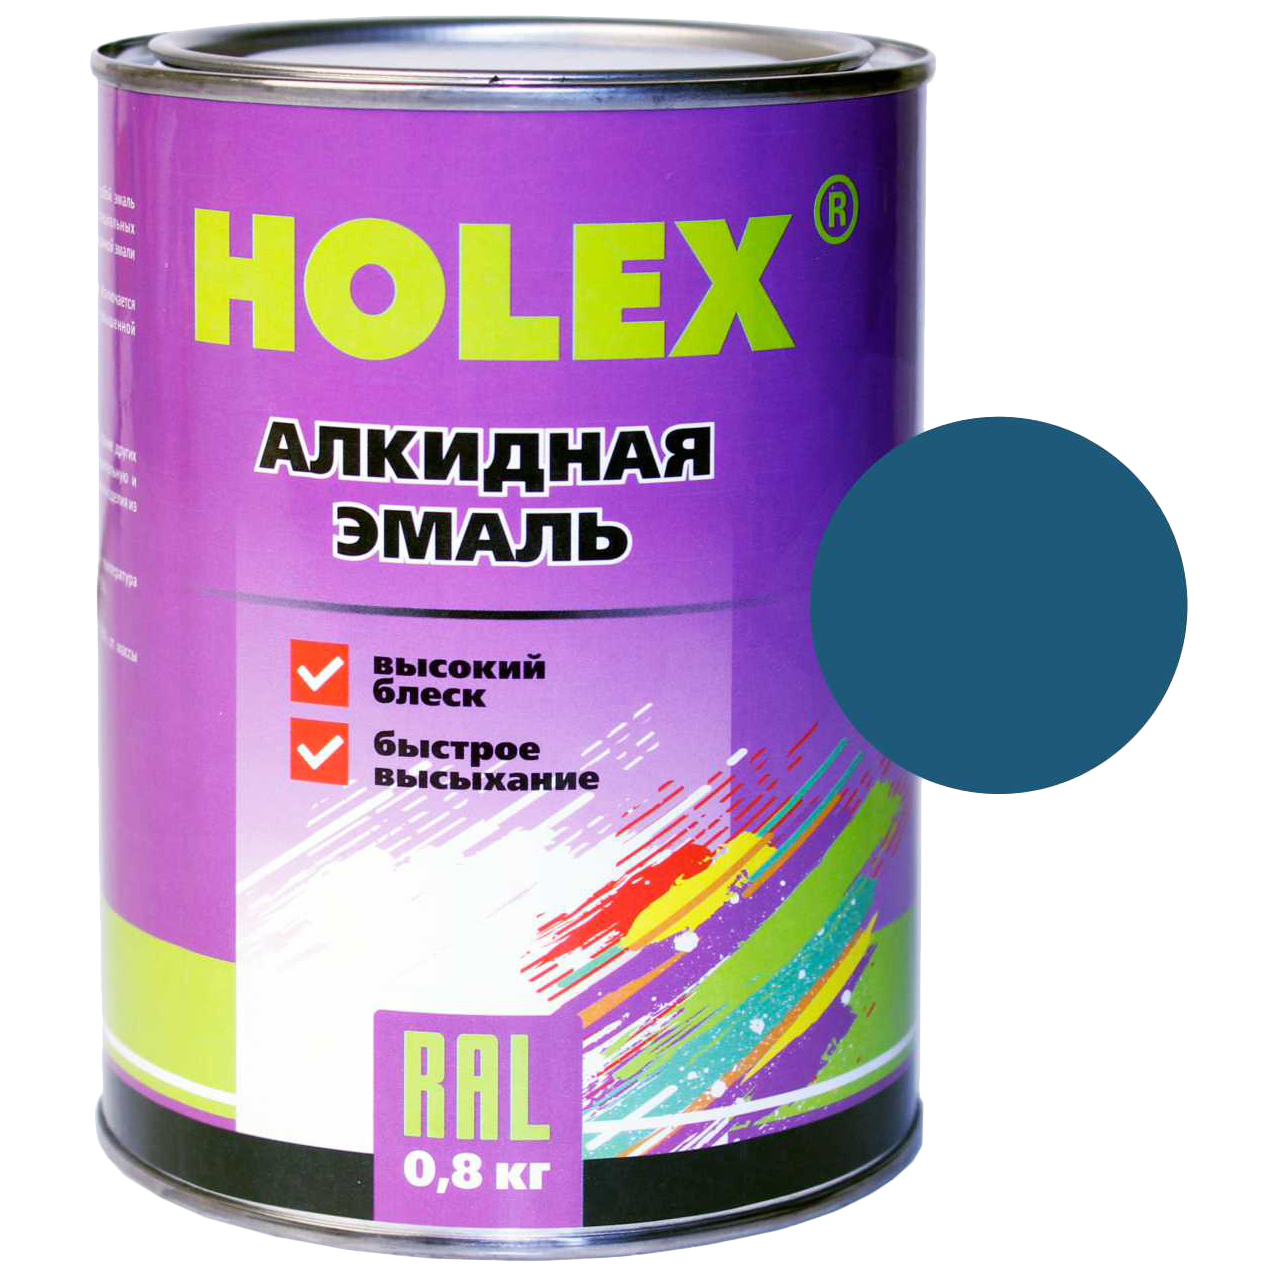 Эмаль автомобильная HOLEX HAS-58994 1115 синяя, алкидная, 0,8 кг.